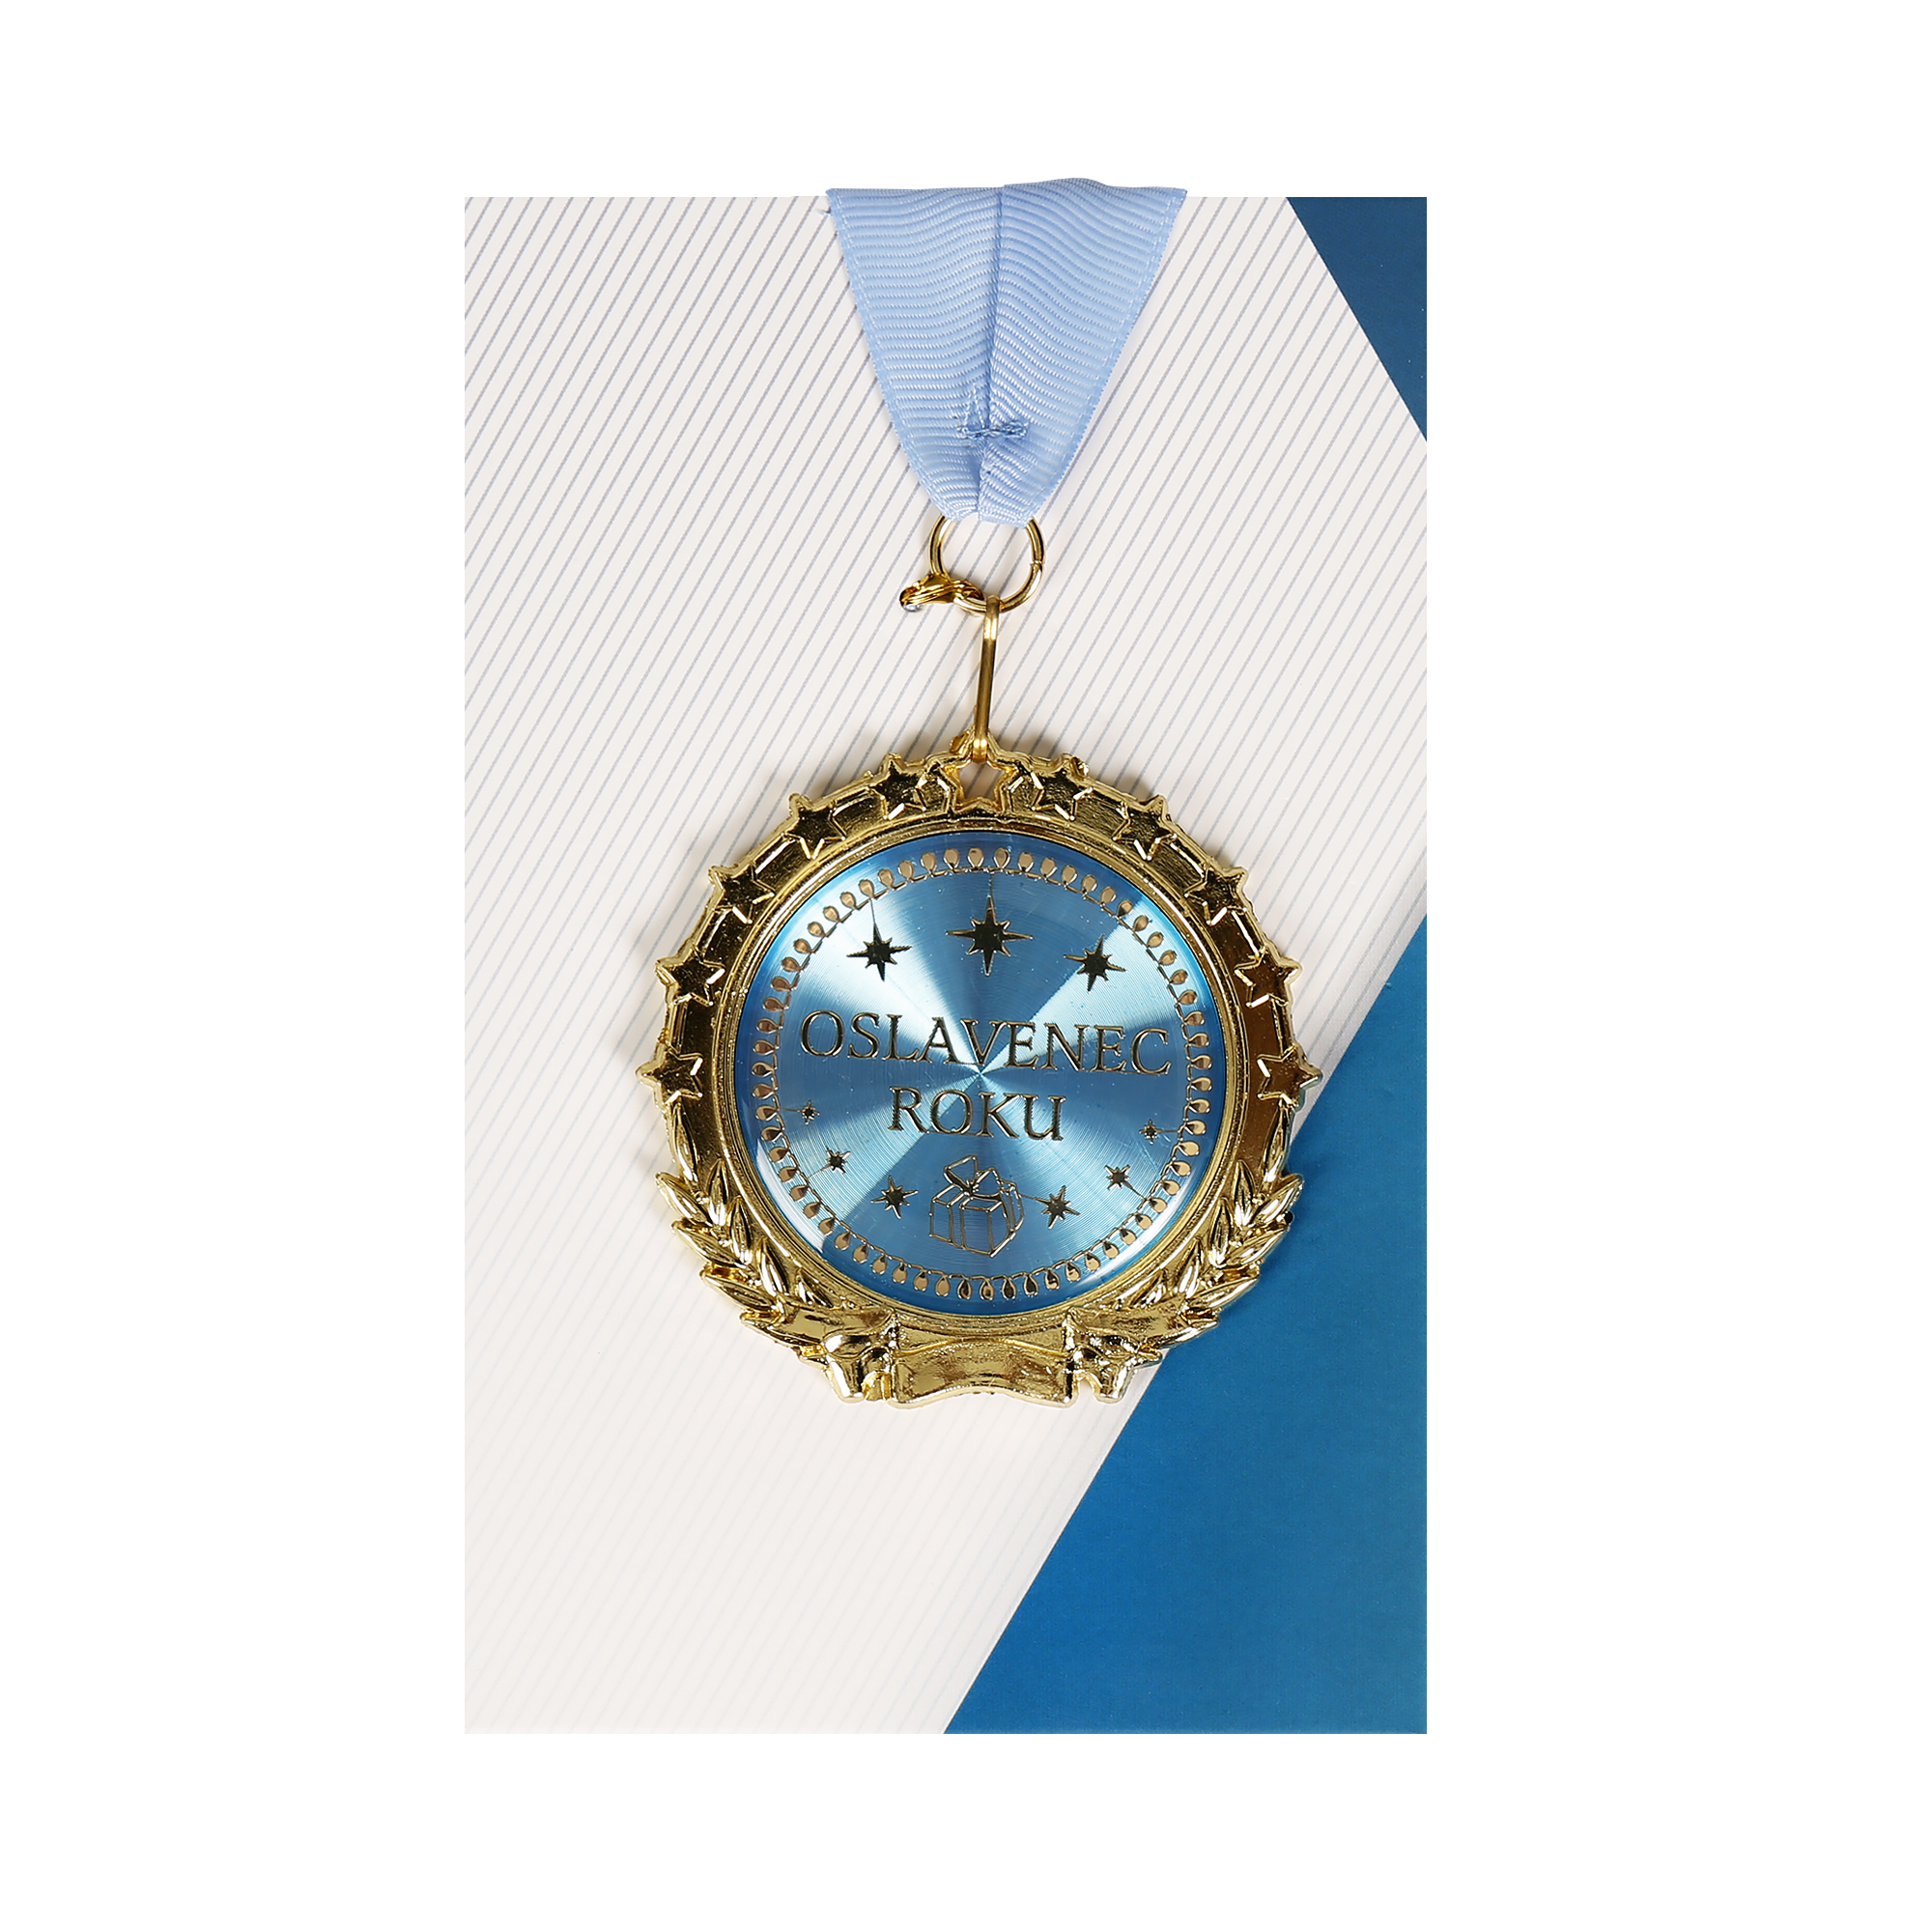 Přání s medailí - Oslavenec roku